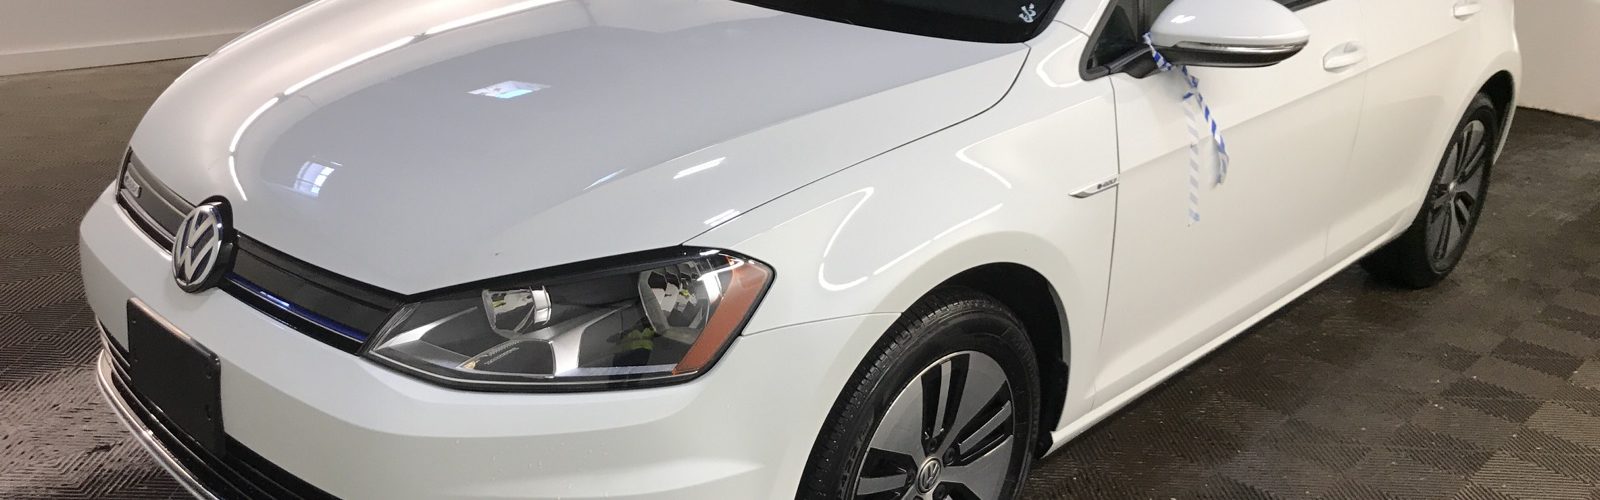 Volkswagen e-Golf SE 2016 – 22 891 Km – Seulement 24 171 $ avec la subvention – VENDU